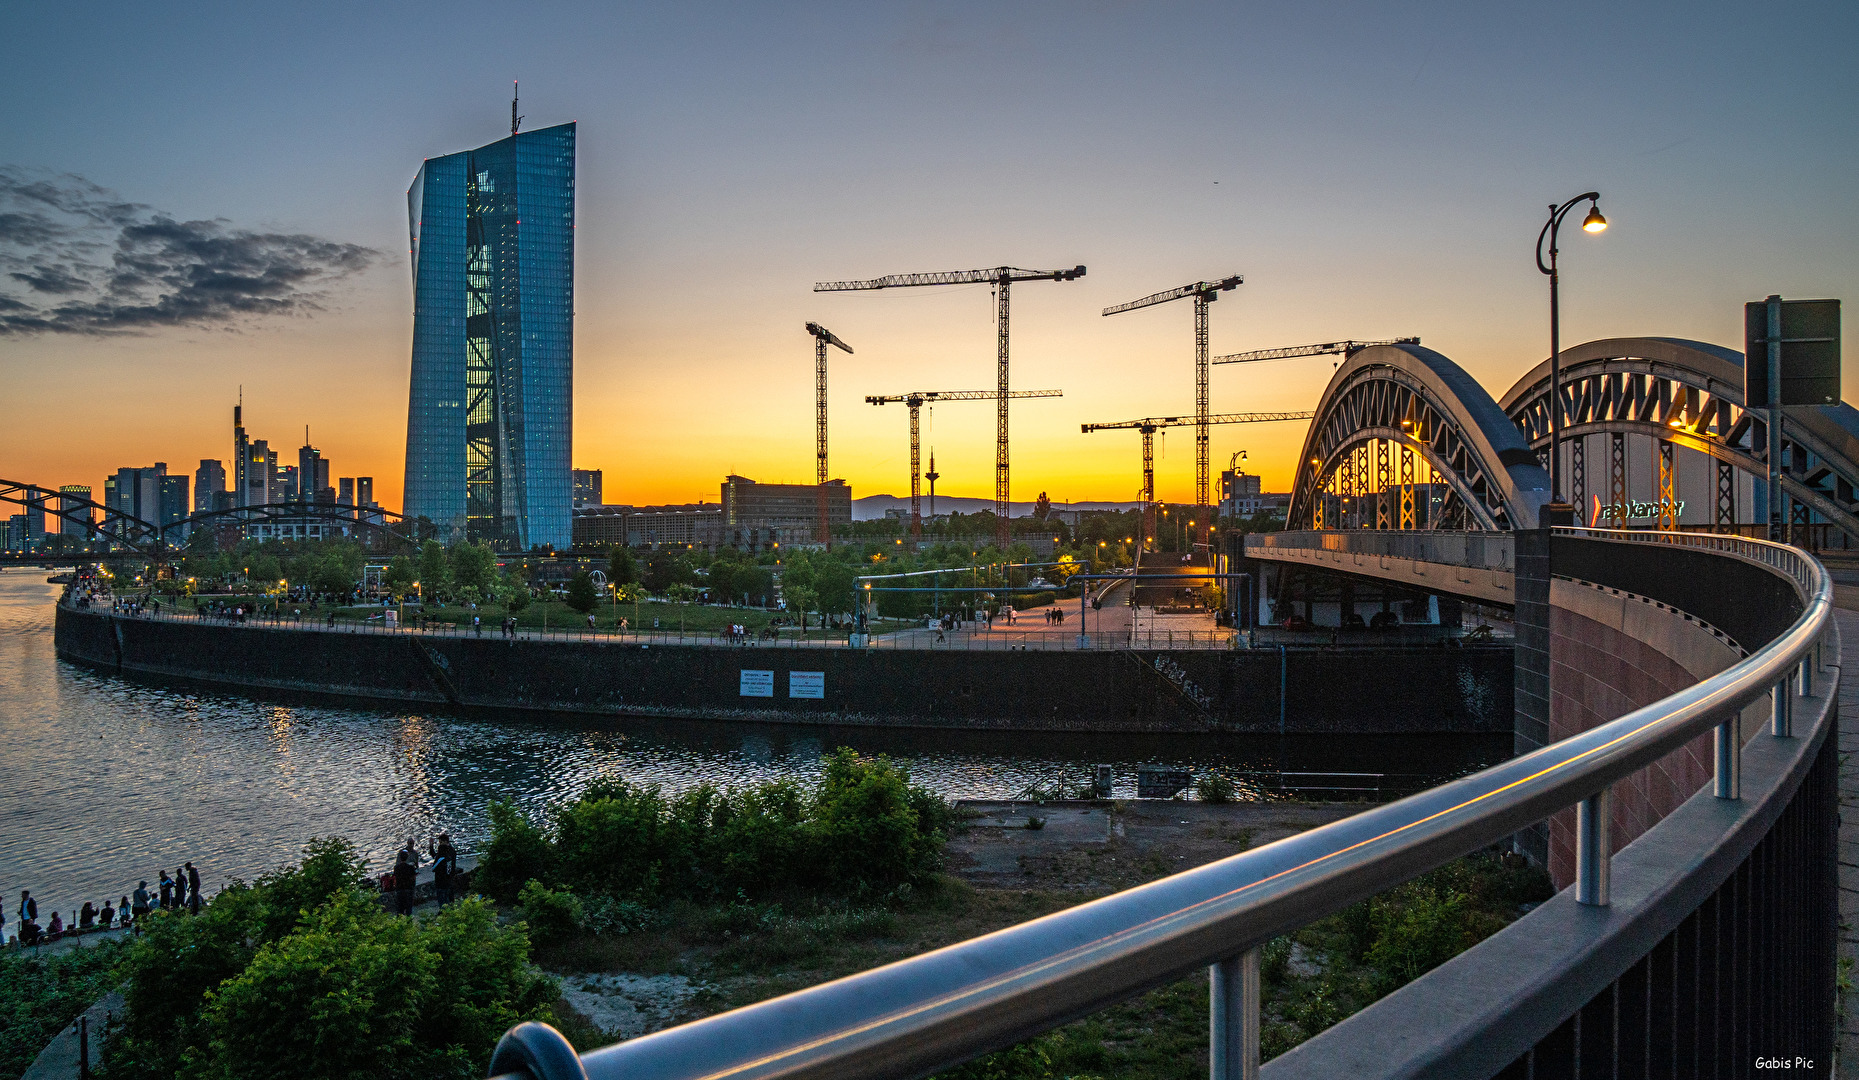 Blaue Stunde in Frankfurt